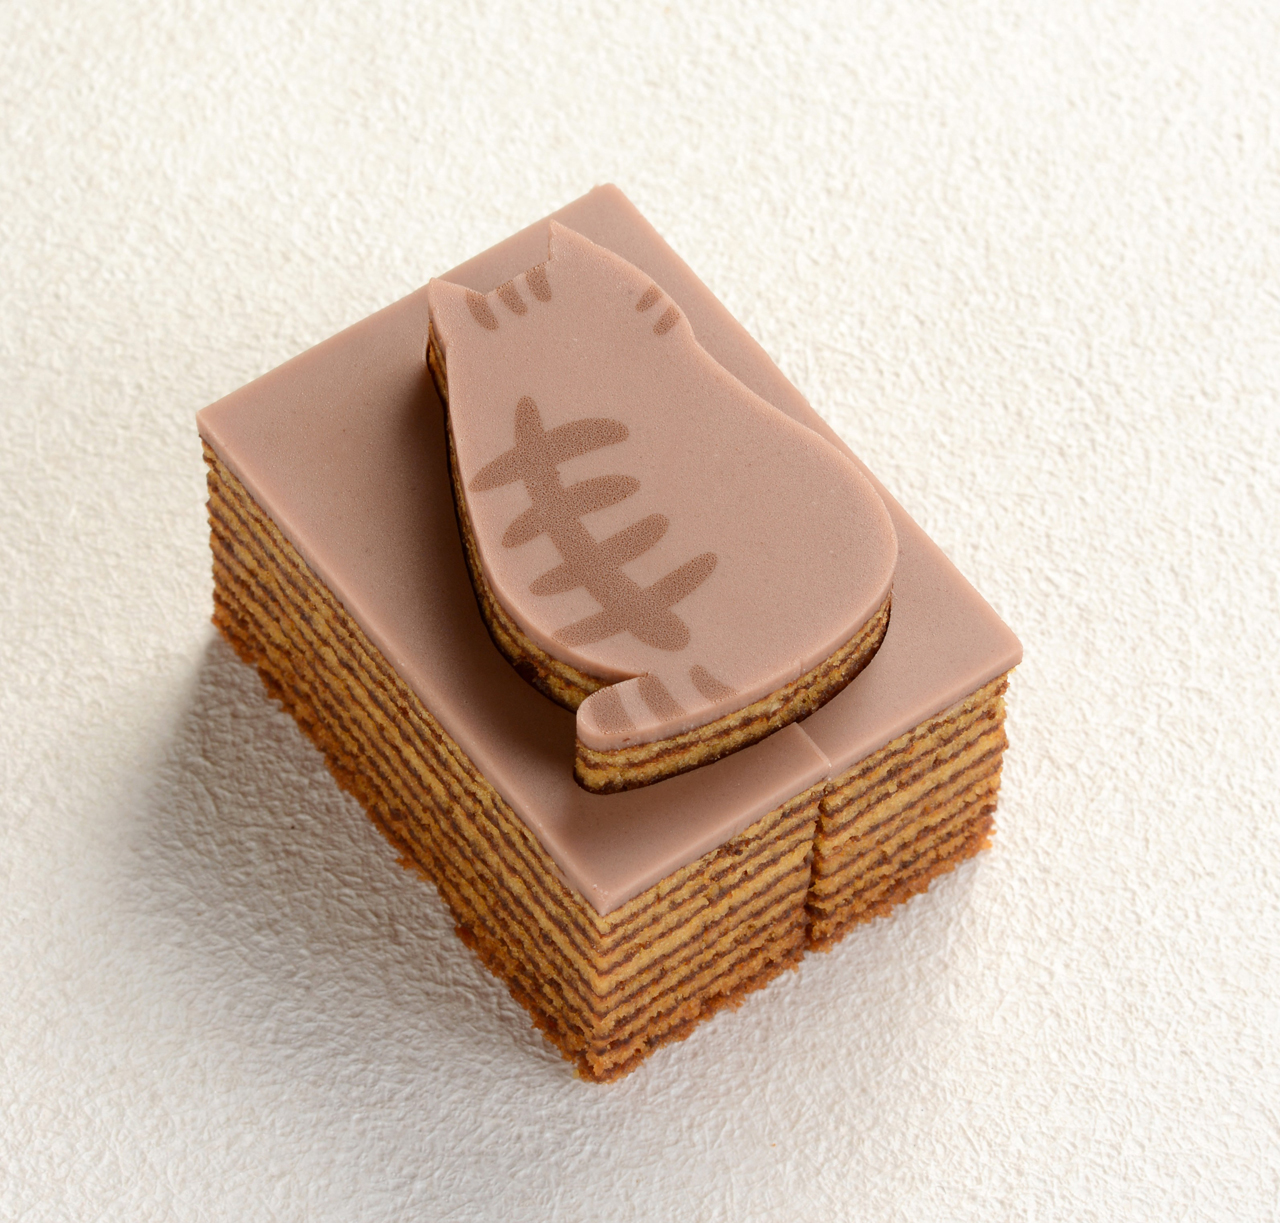 2月に発売され、猫好きに大人気のチョコバウムクーへン「にゃんこのバウム in Kanazawa」